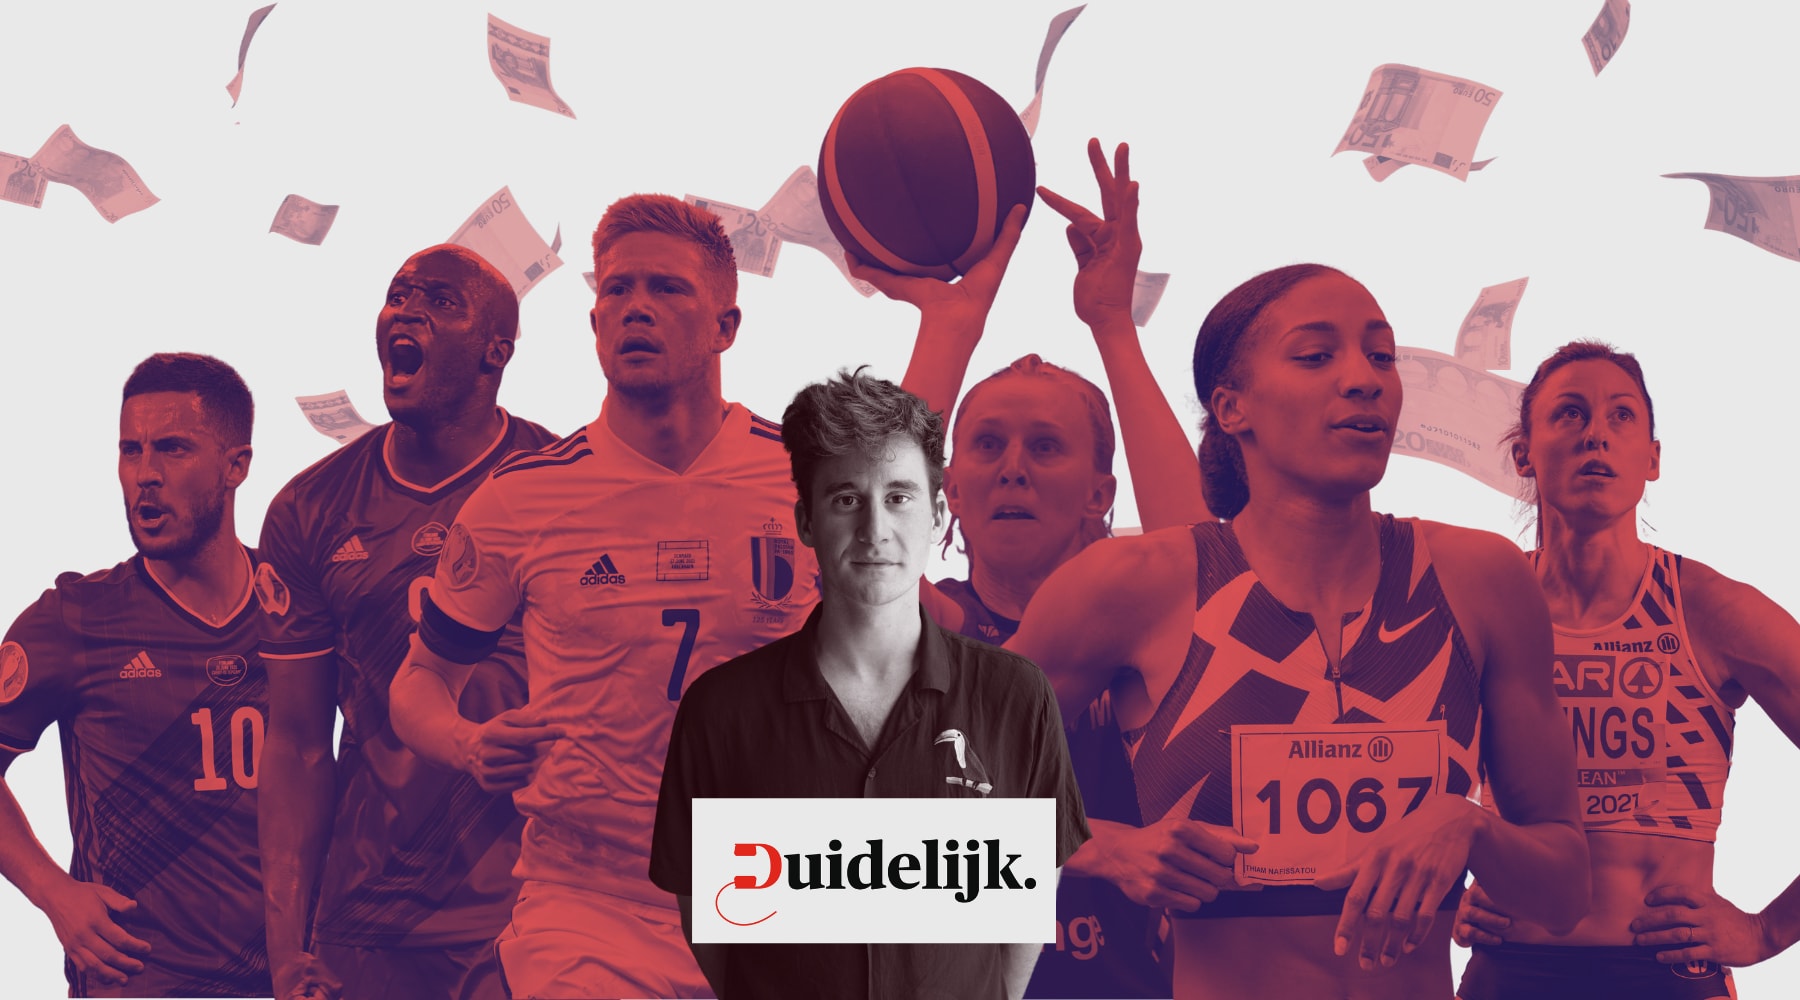 ▶ Waarom verdienen de Rode Duivels zo veel meer dan onze olympische atleten?